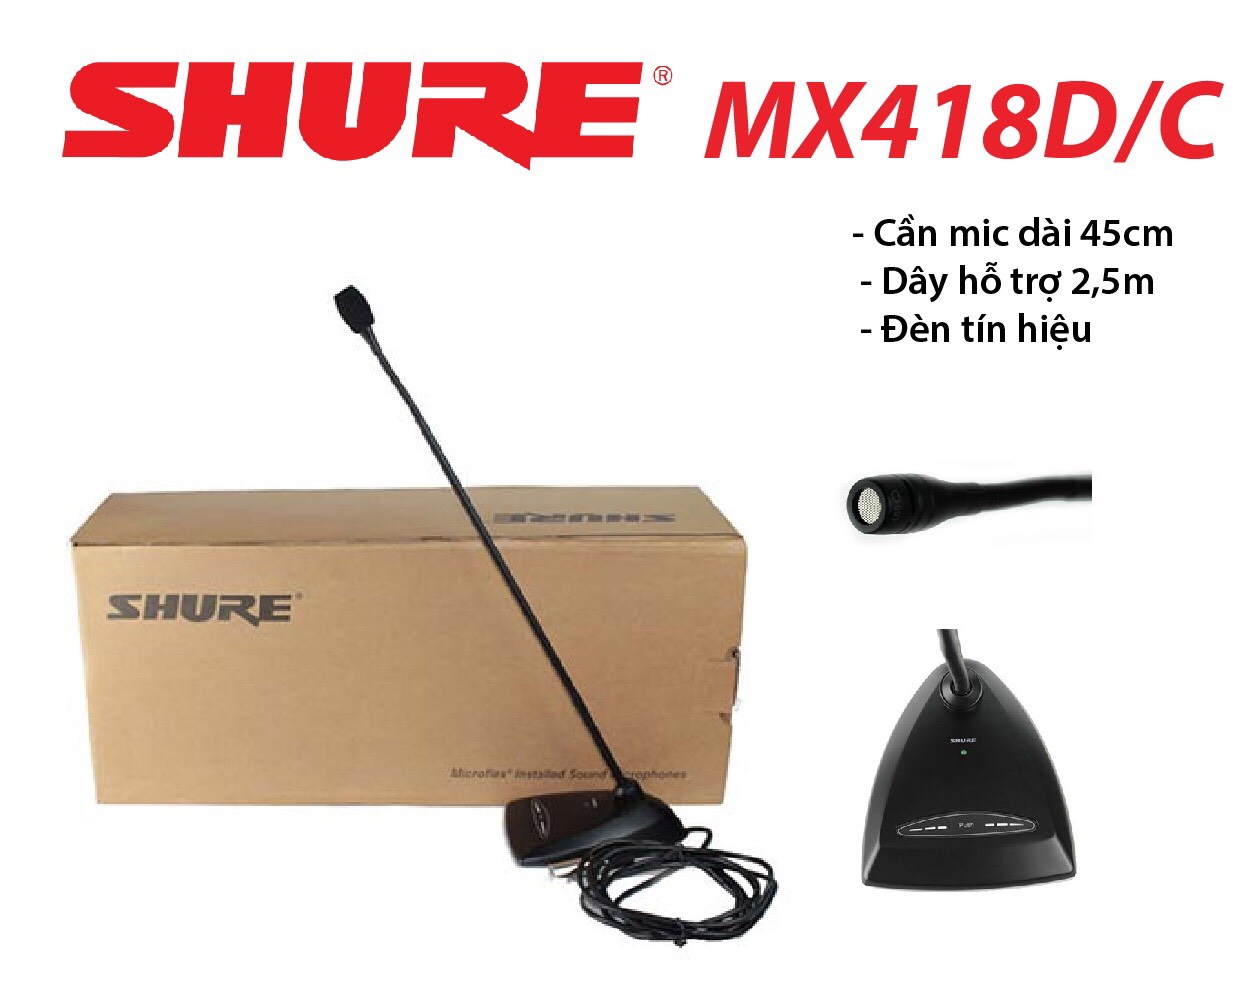 Micro cổ ngỗng đơn hướng Shure MX418D/C